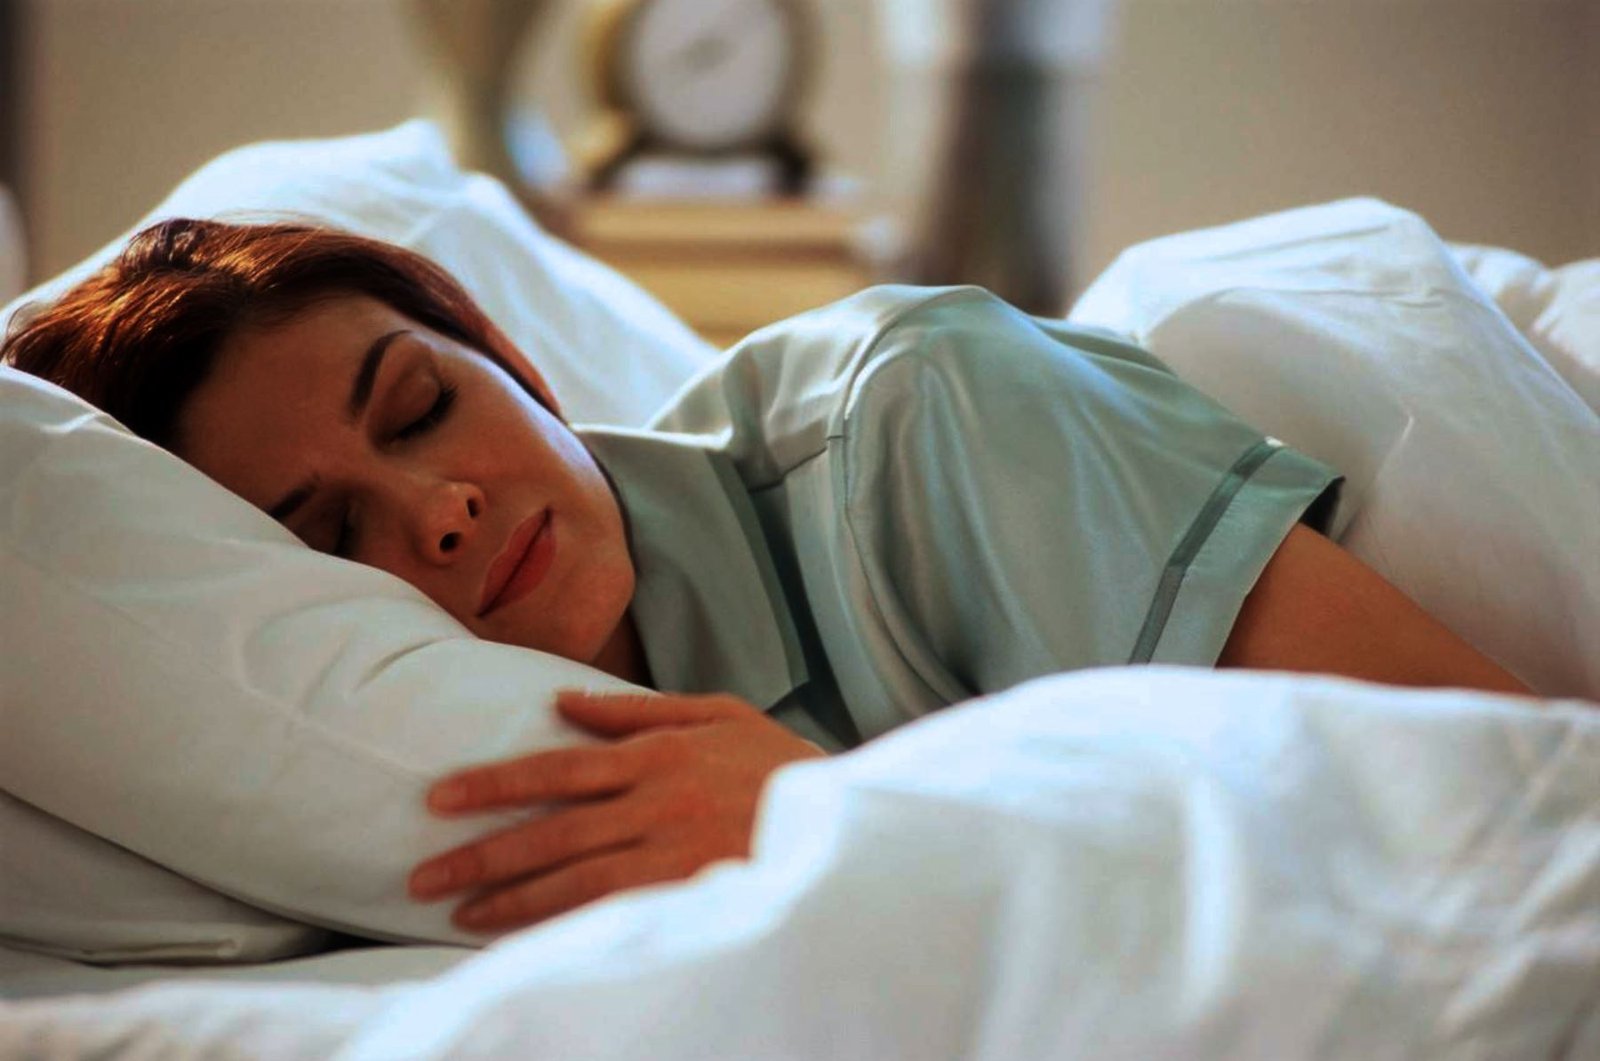 Dormir bien reduce riesgo de padecer diabetes, ansiedad y enfermedades cardiovasculares